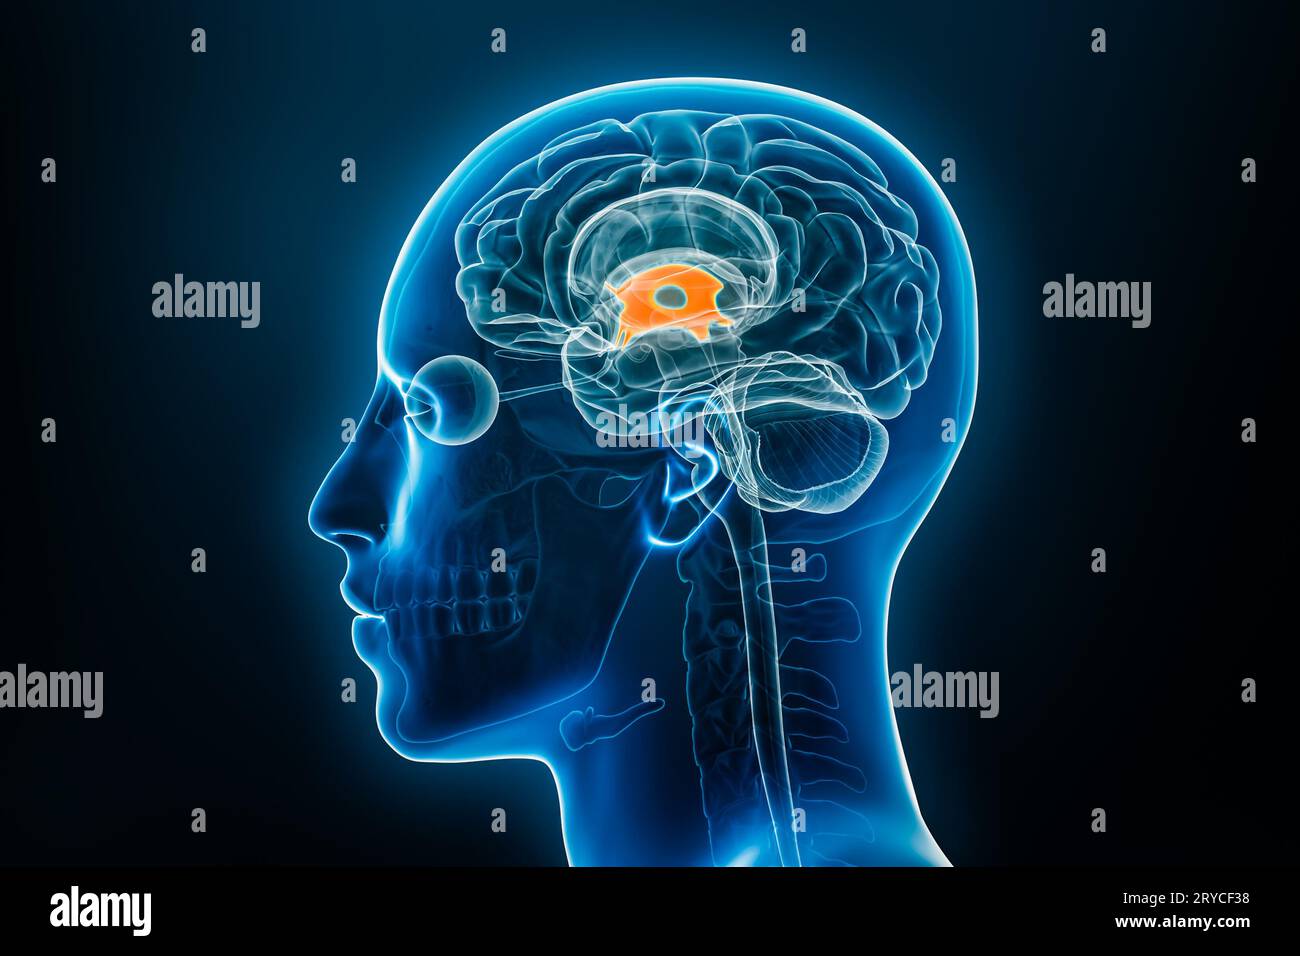 Vue de profil ou latérale radiologique du troisième ventricule cérébral illustration de rendu 3D avec contours du corps masculin. Anatomie humaine, médecine, biologie, science, Banque D'Images